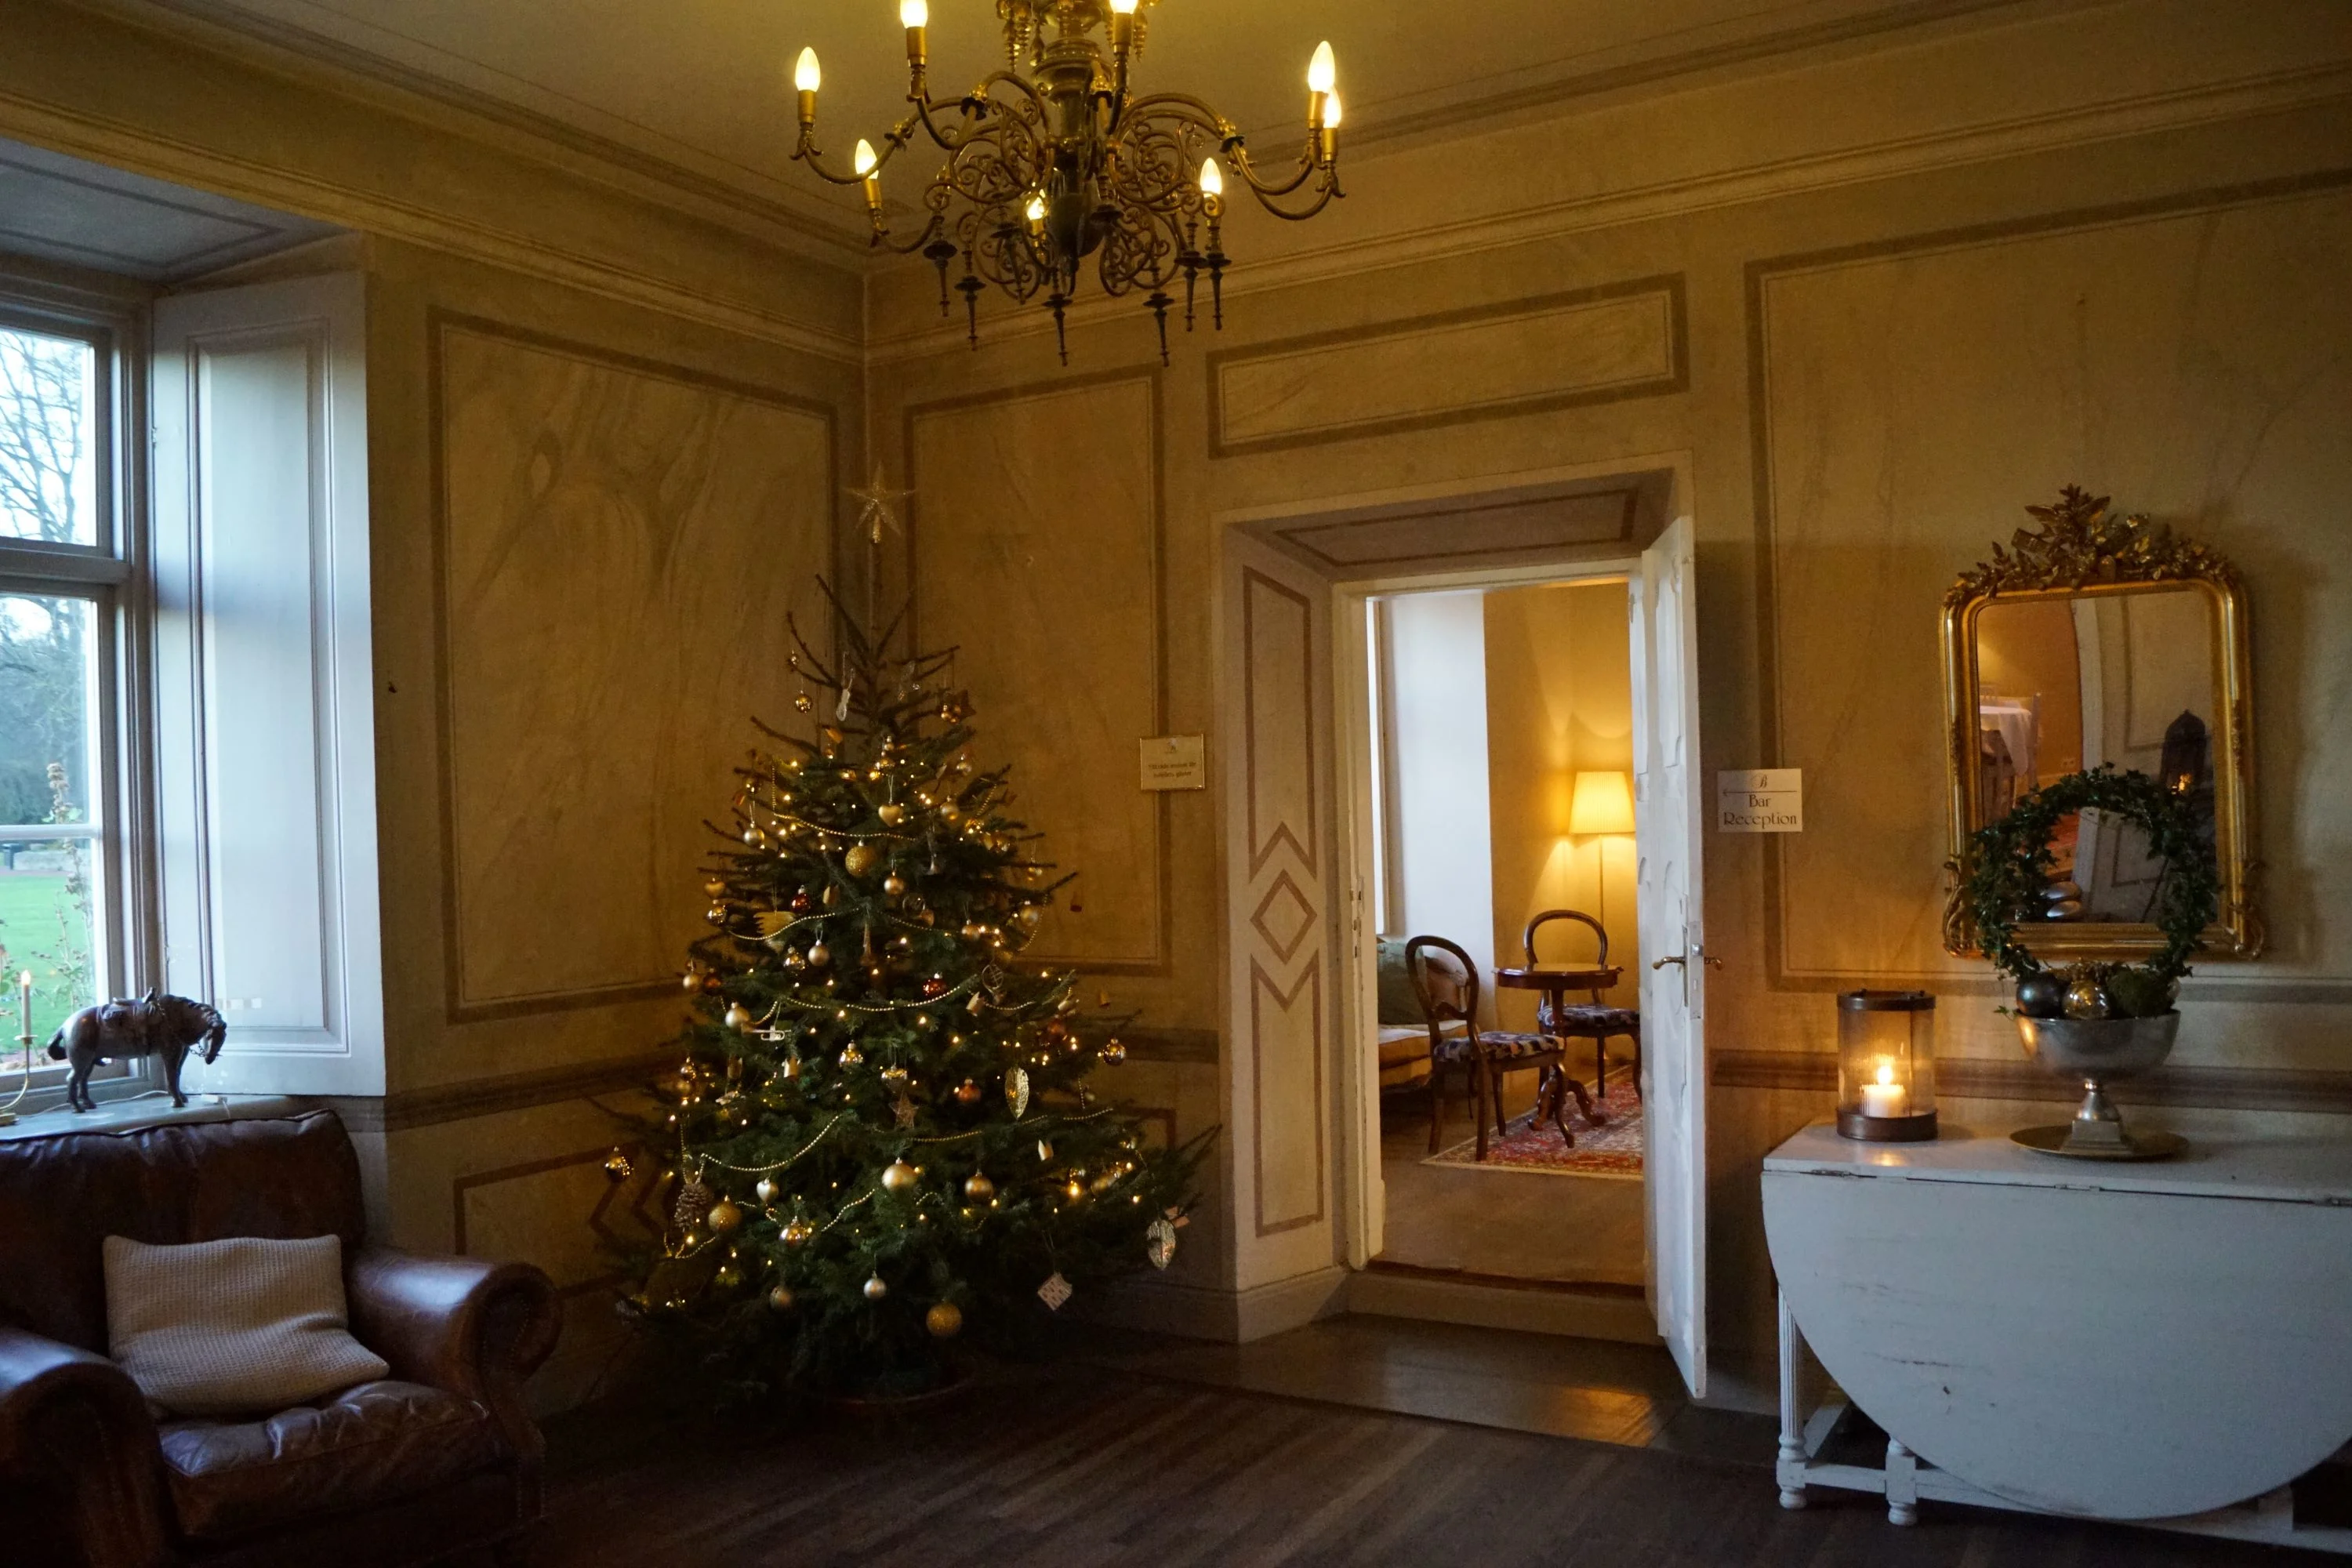 Bäckaskog Slott er pyntet fint op til jul med pyntede juletræer på slottet.